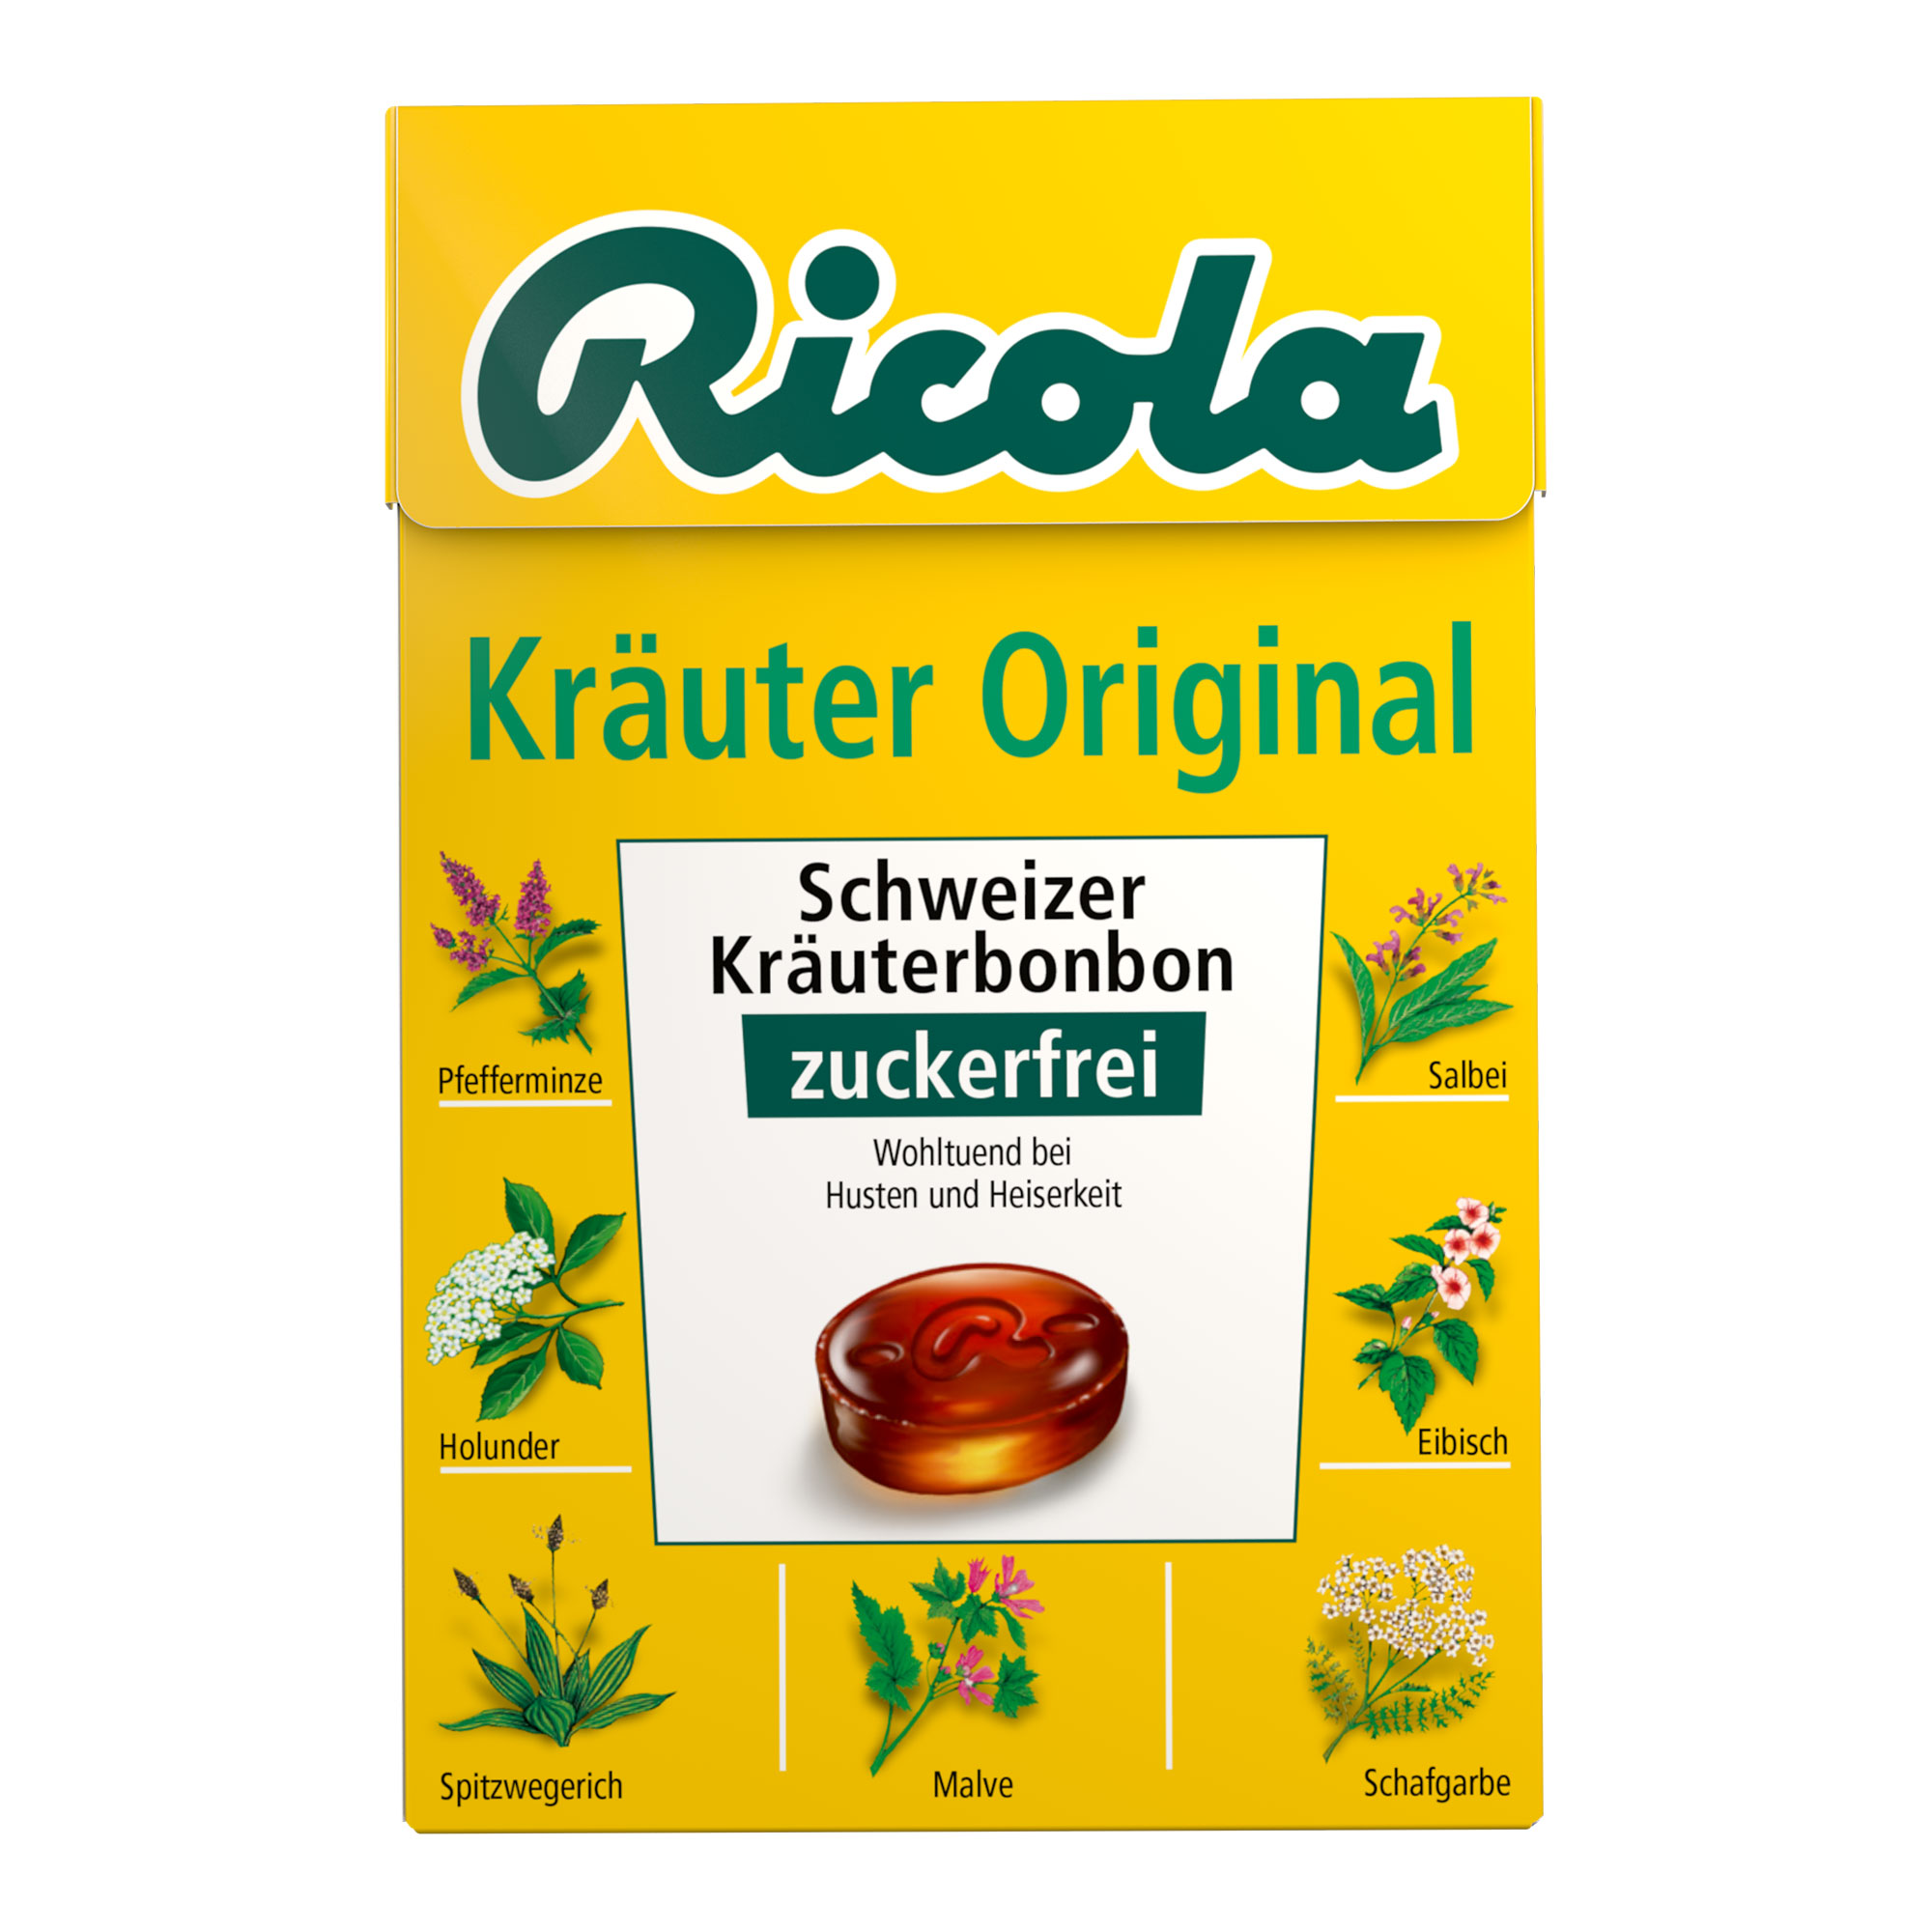 Schweizer Kräuterbonbons mit Menthol und Kräutern. Zuckerfrei.